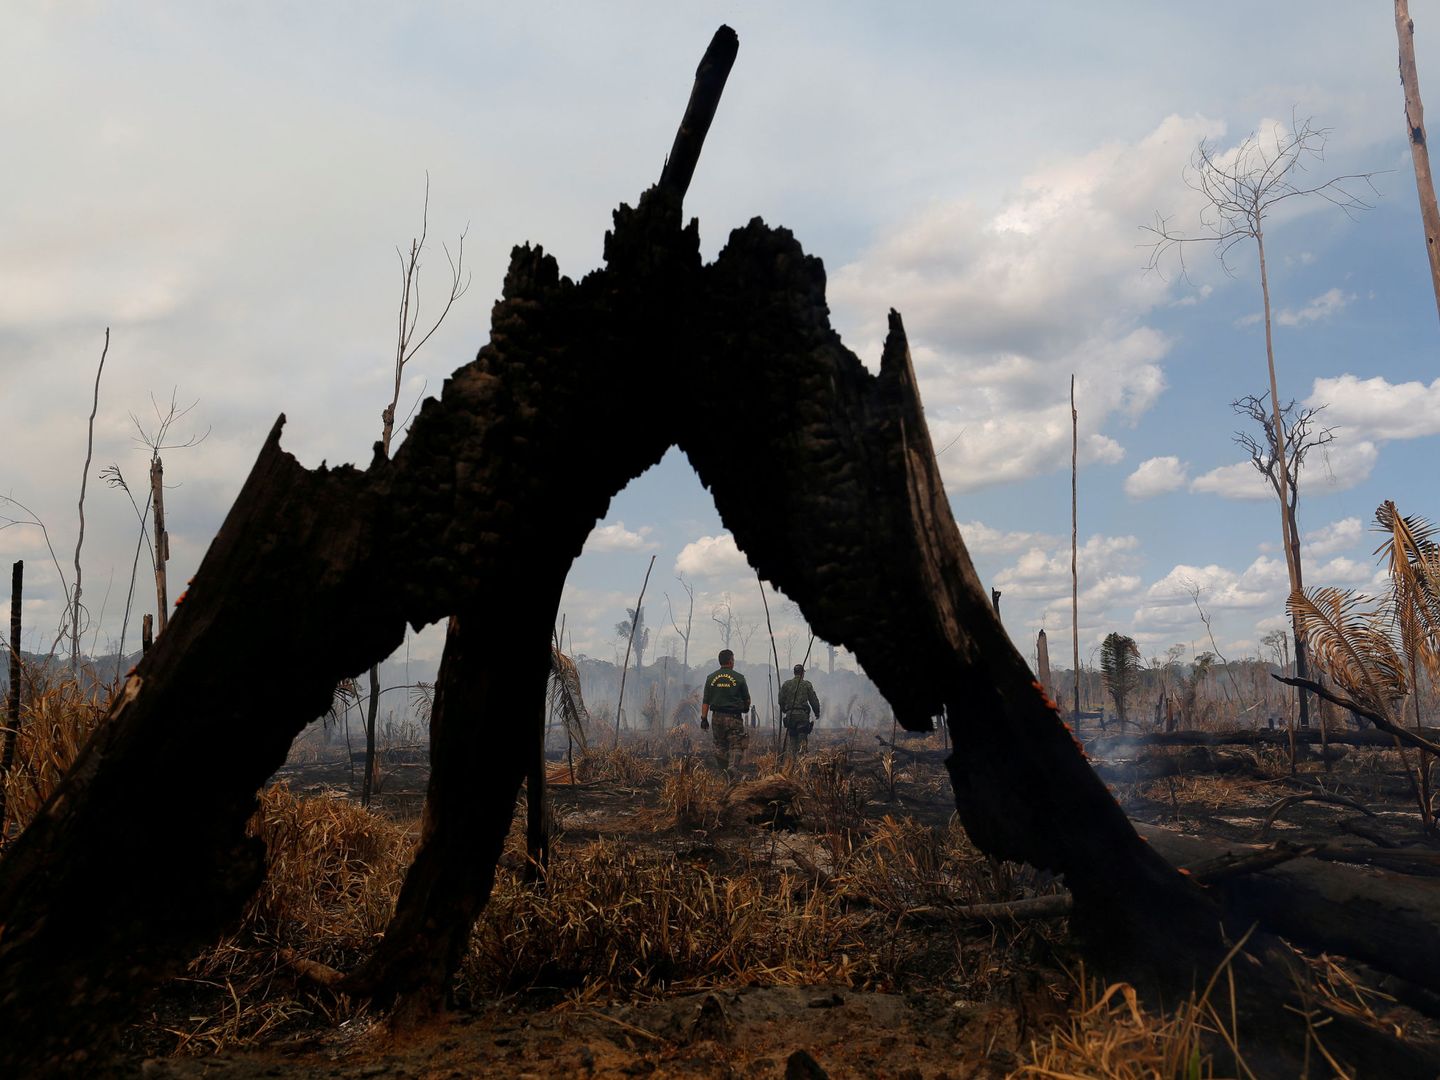 Agentes del Ibama inspeccionan una zona quemada en Apui, en la región del estado de Amazonas, Brasil. (Reuters)